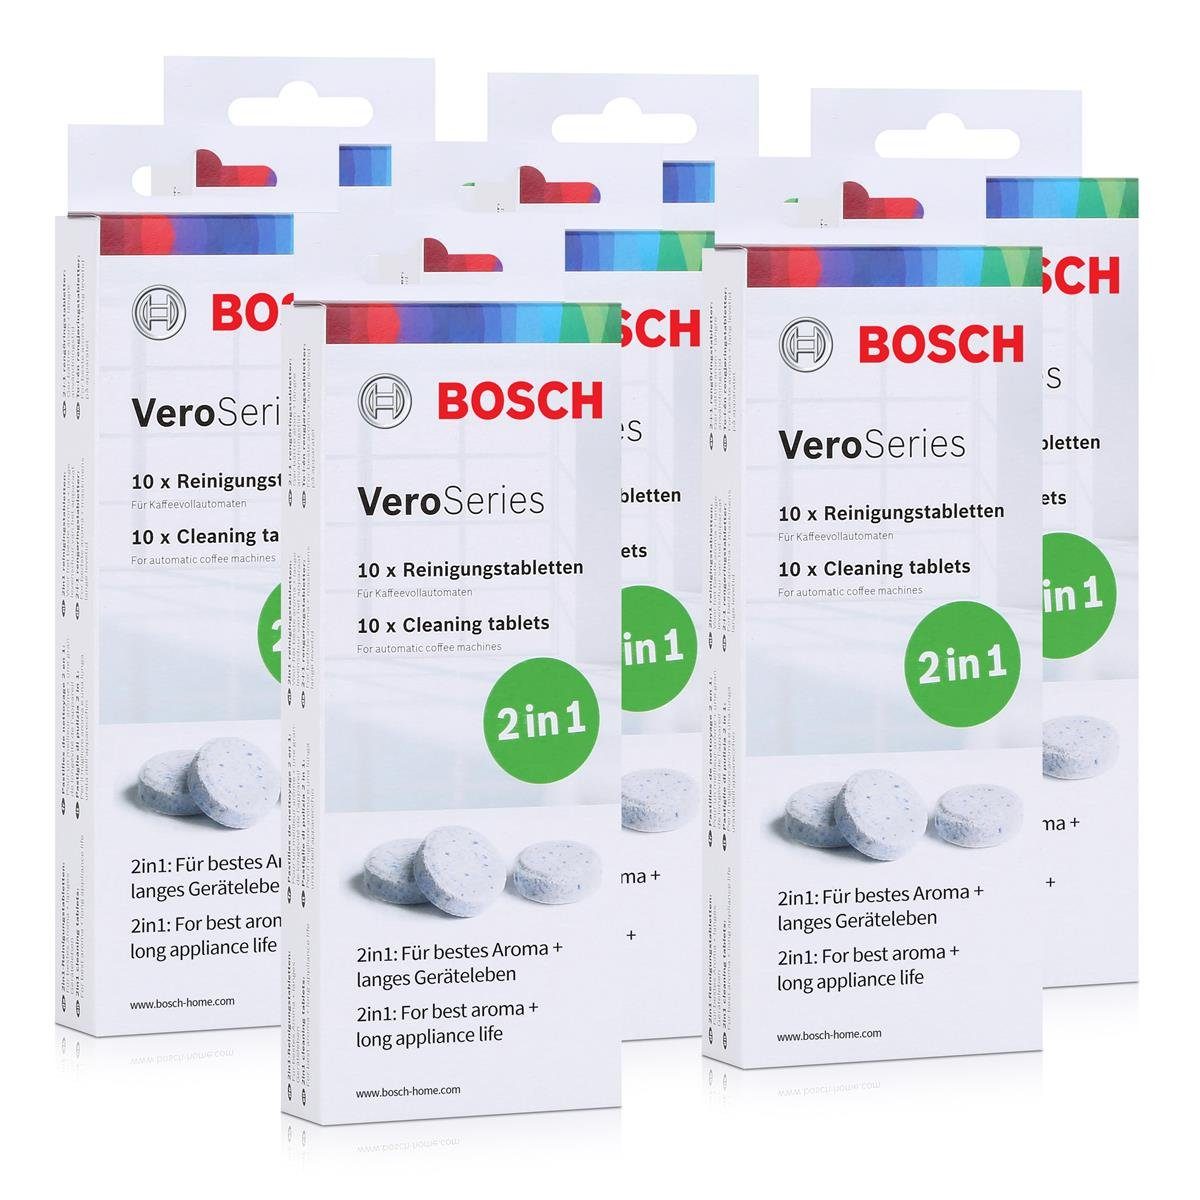 10 Tabletten Reinigungstabletten 2in1 BOSCH (7er VeroSeries - Bosch TCZ8001 Reinigungstabletten